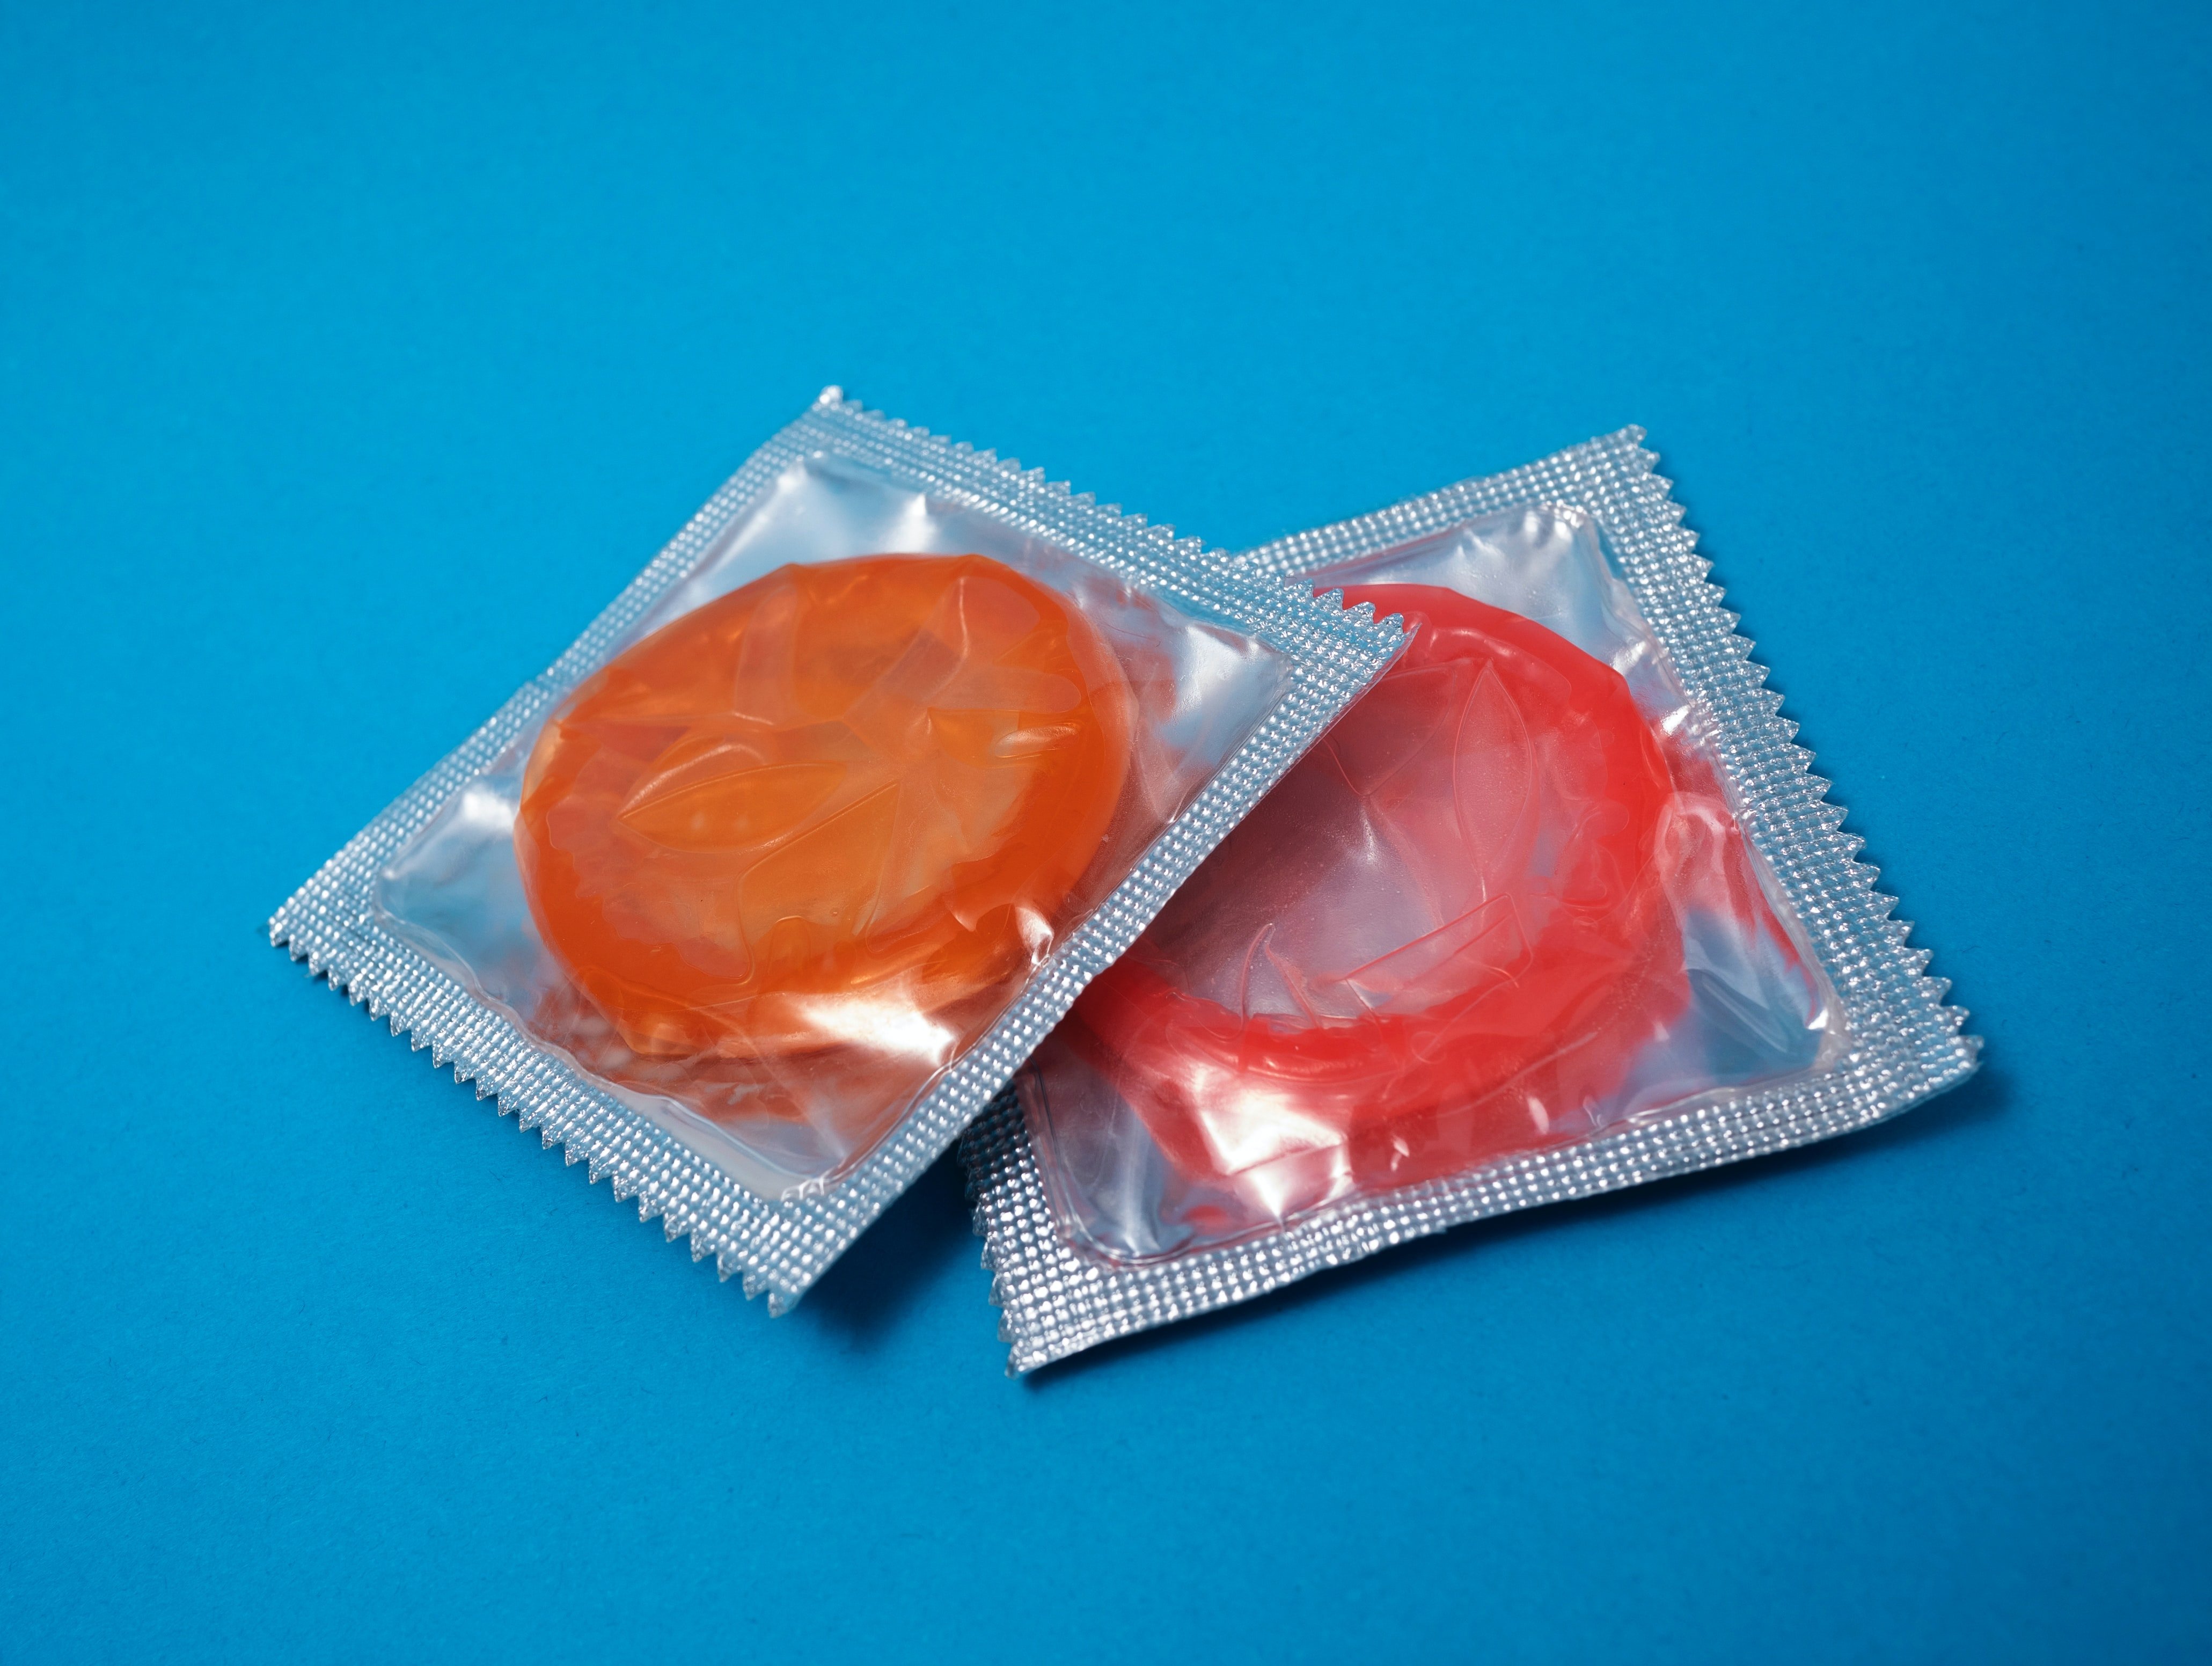 Califòrnia ja prohibeix l'stealthing, l'acció de treure's el condó sense permís